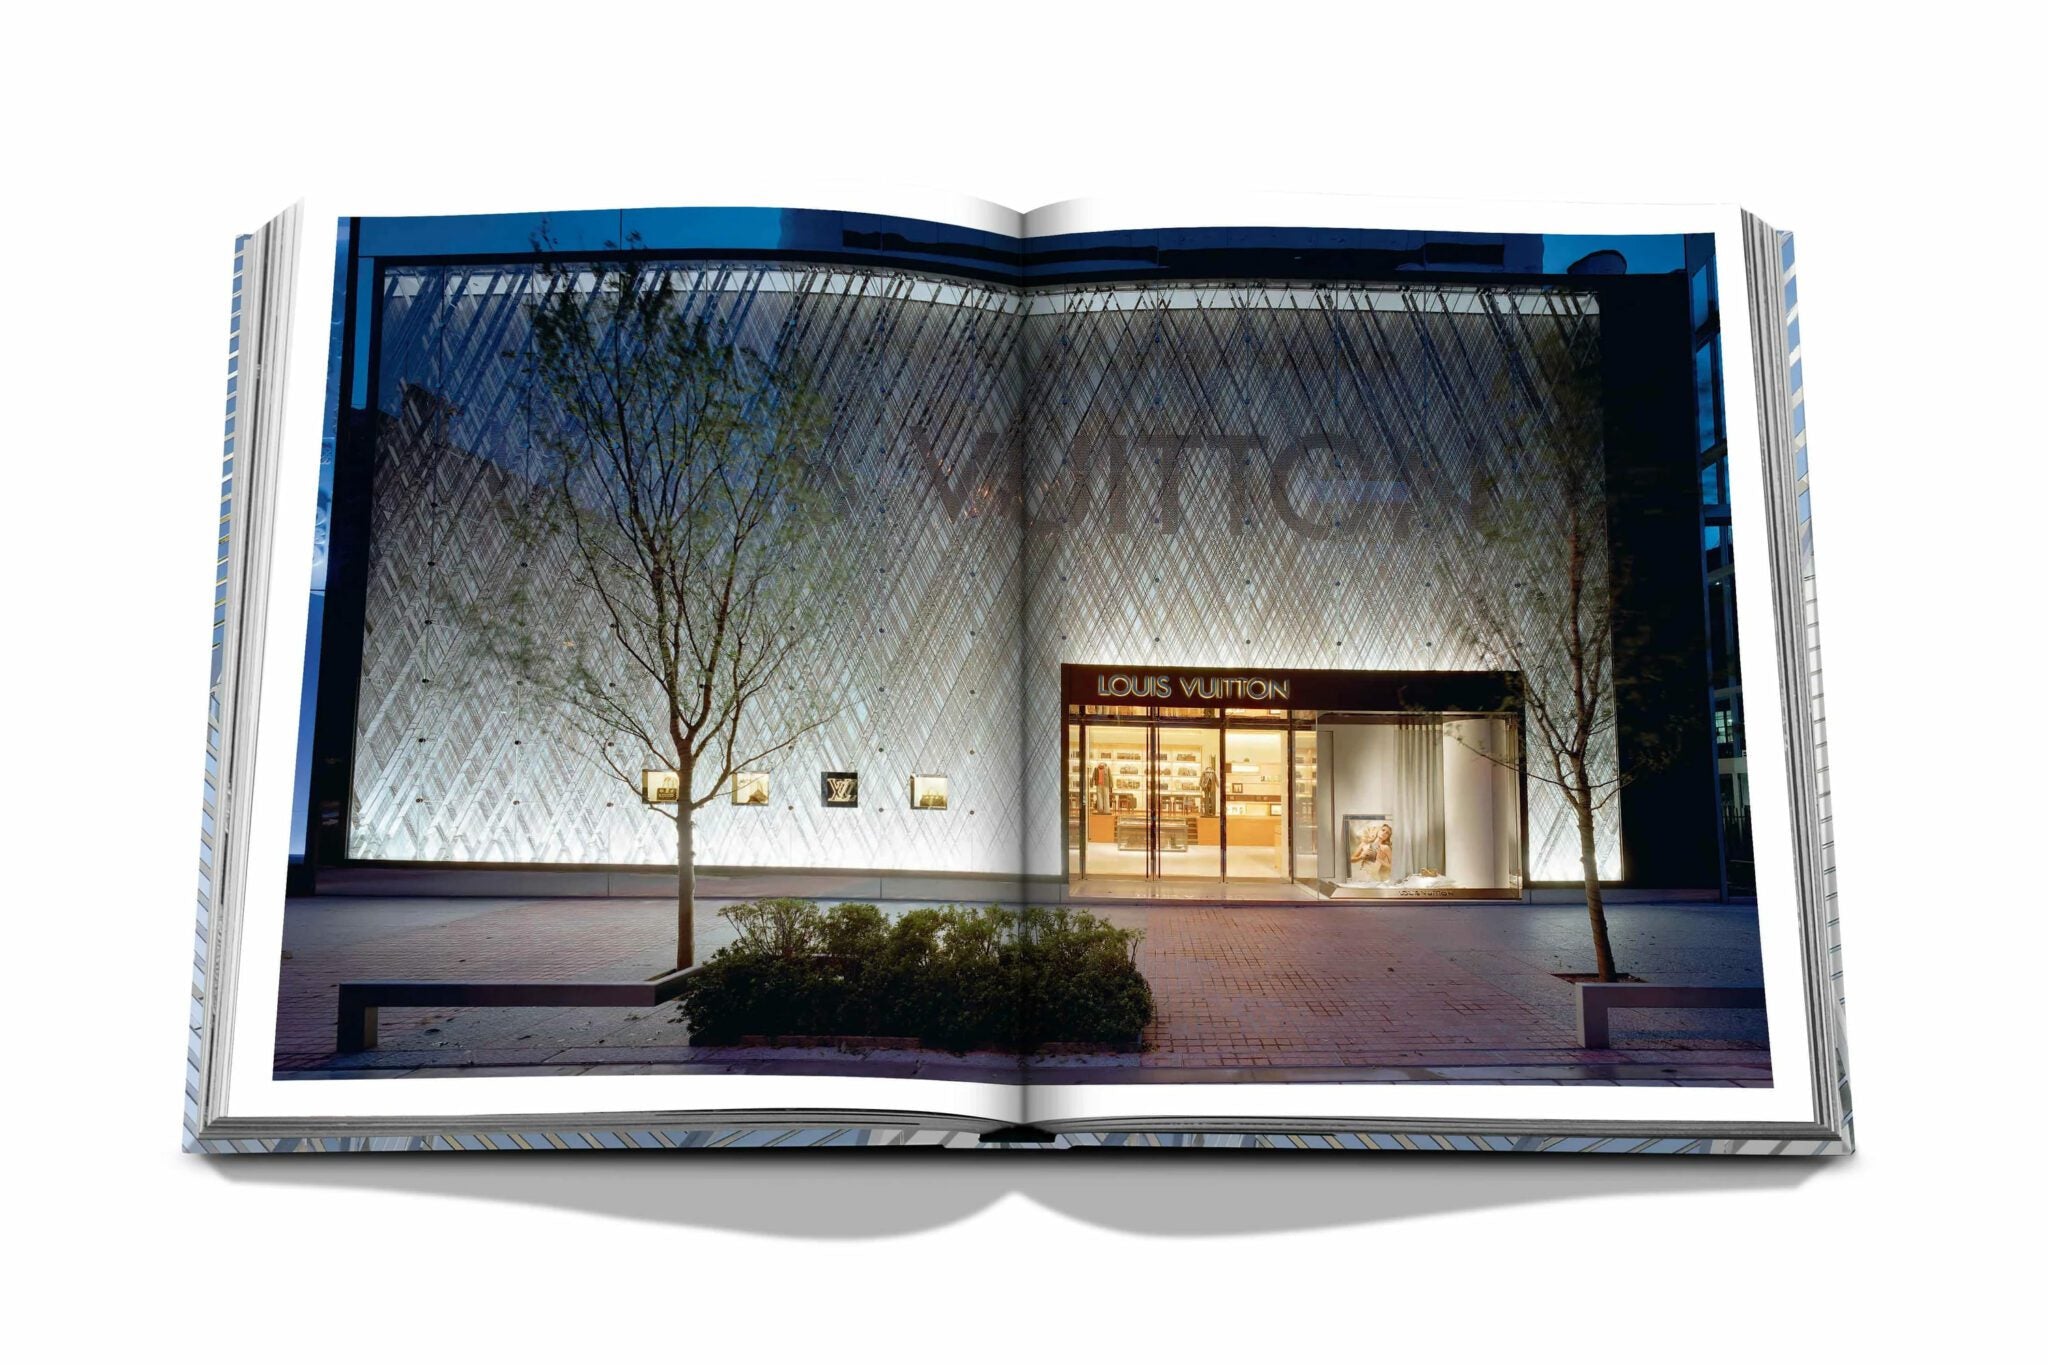 Assouline Louis Vuitton Skin: Architektur des Luxus (Tokyo Edition)